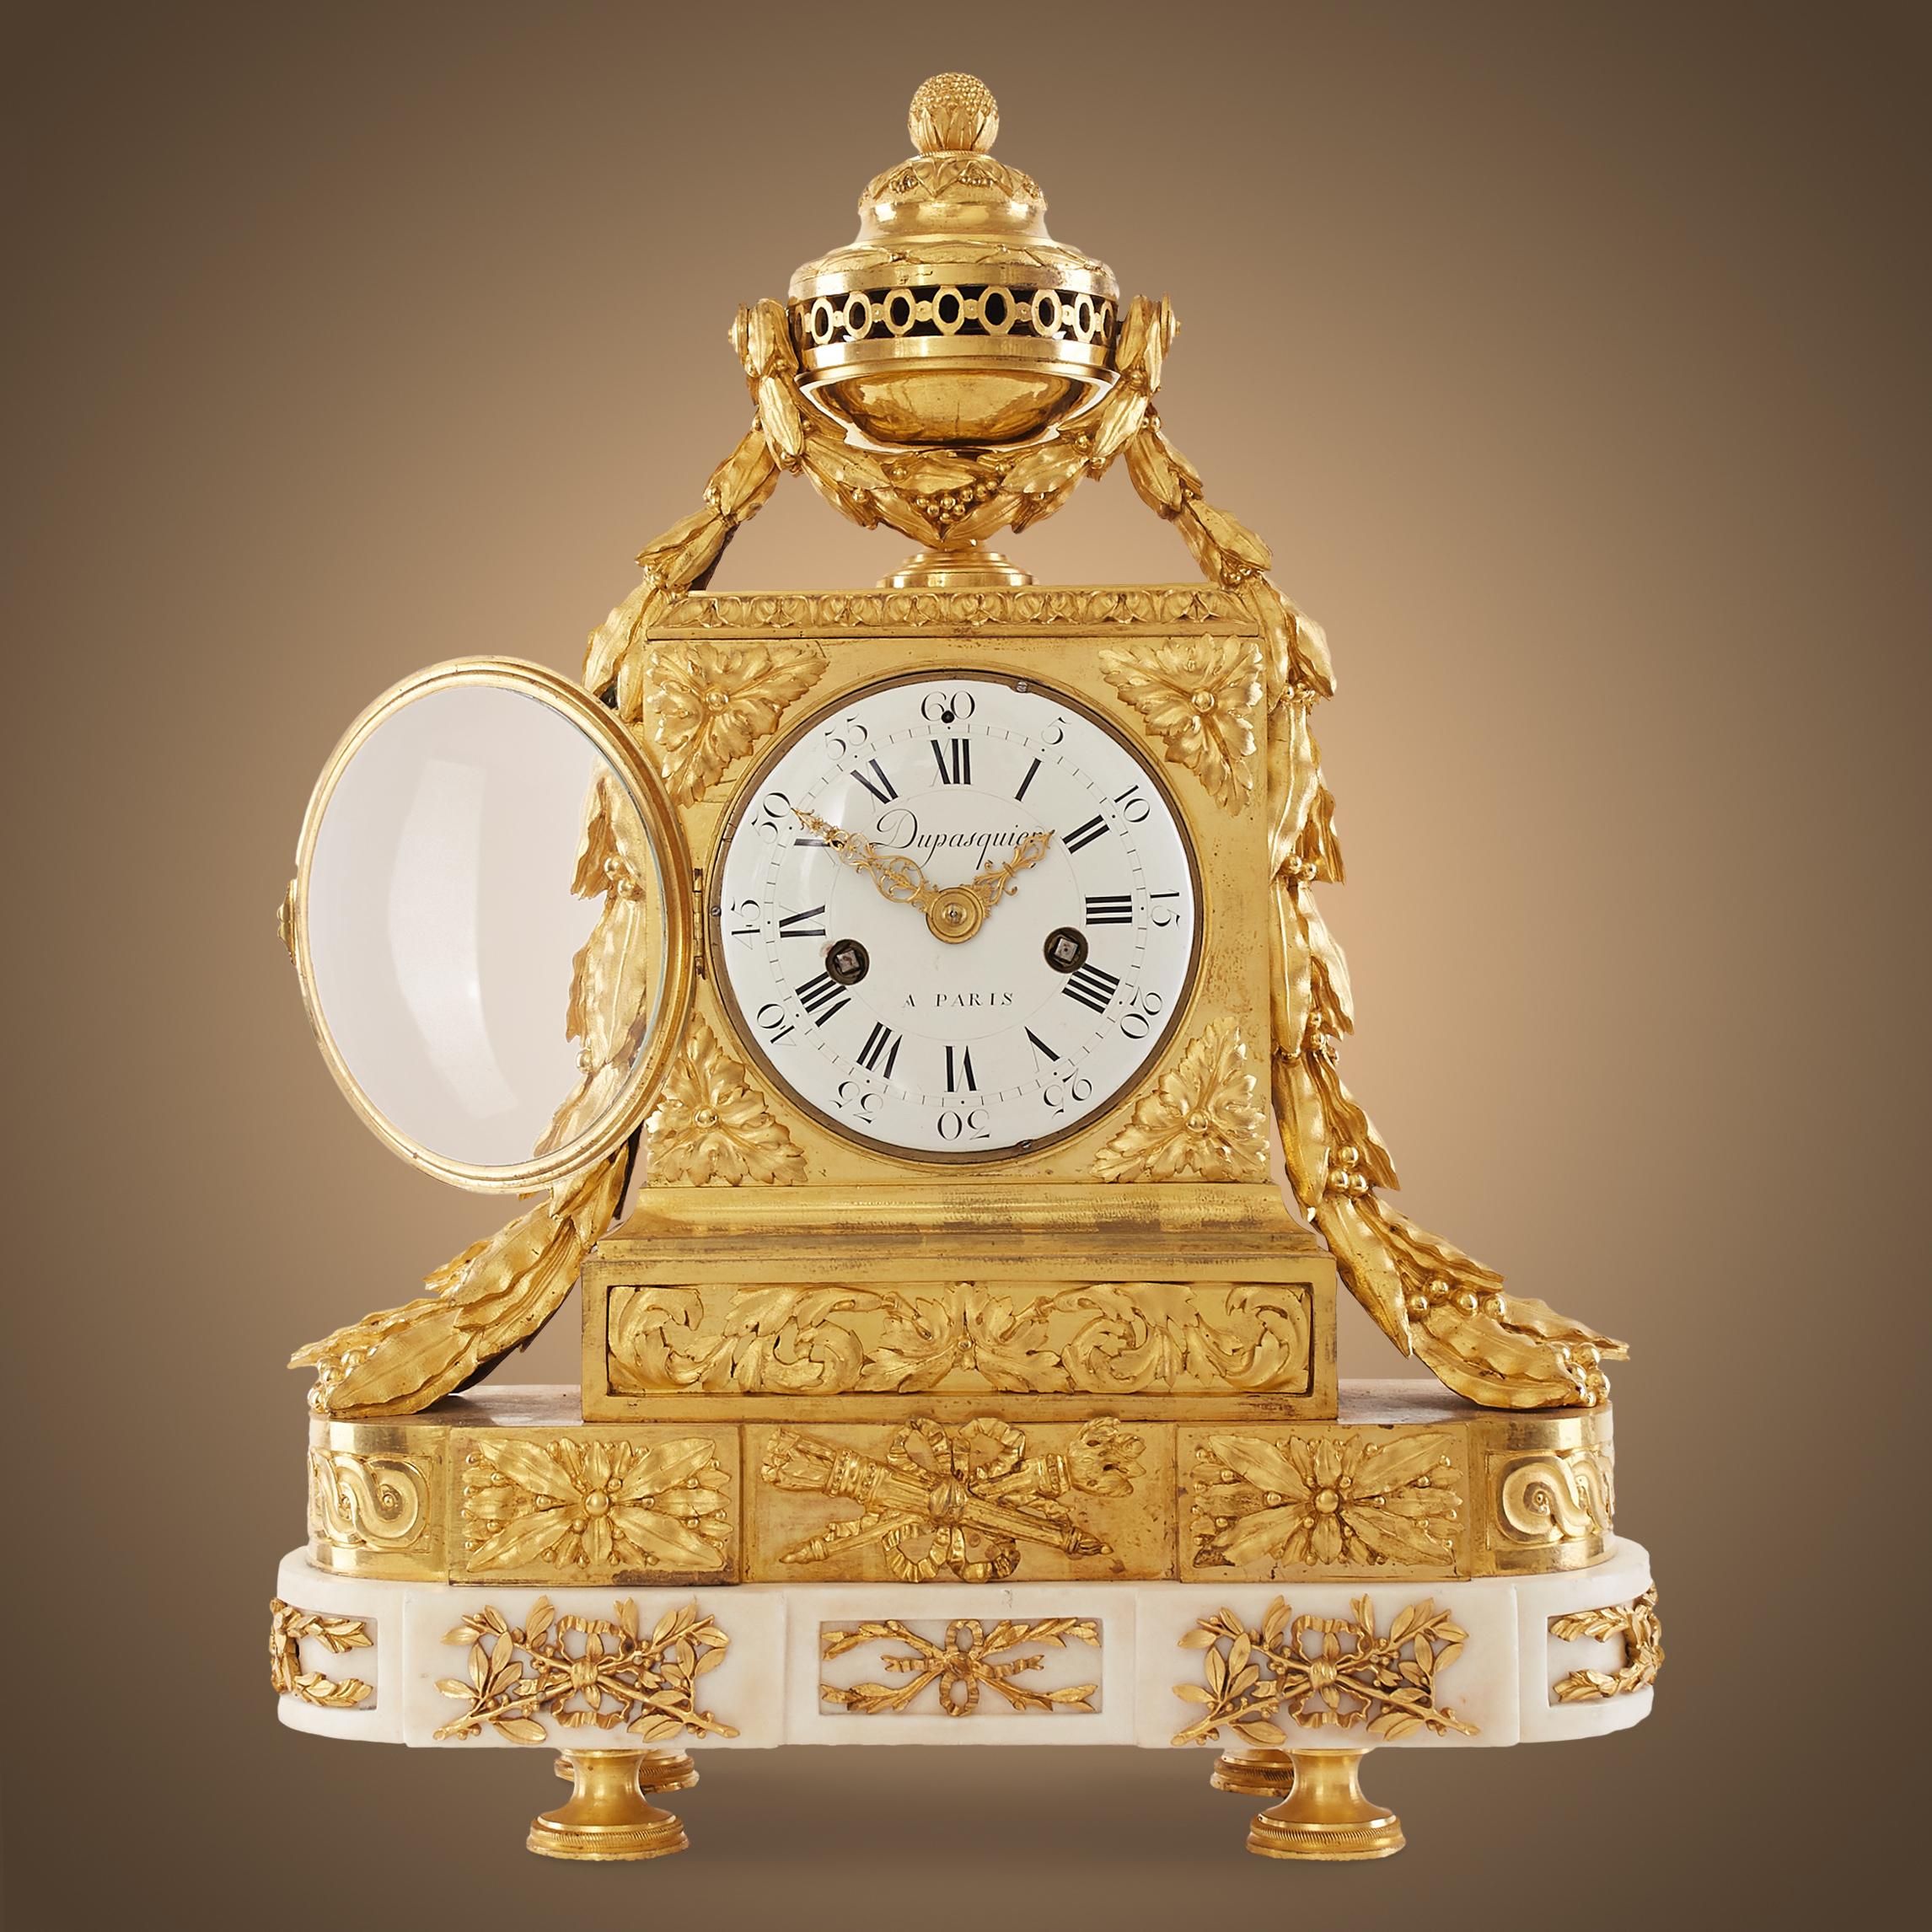 Die herausragende Kaminsimsuhr ist im Stil von Louis XVI - Louis Seize (1774-1792) gehalten. Der königliche Atem erscheint in jedem Motiv. 
Fast der gesamte obere Teil der Uhr ist mit Ormolu eingelegt, nur der Sockel ist aus äußerst feinem